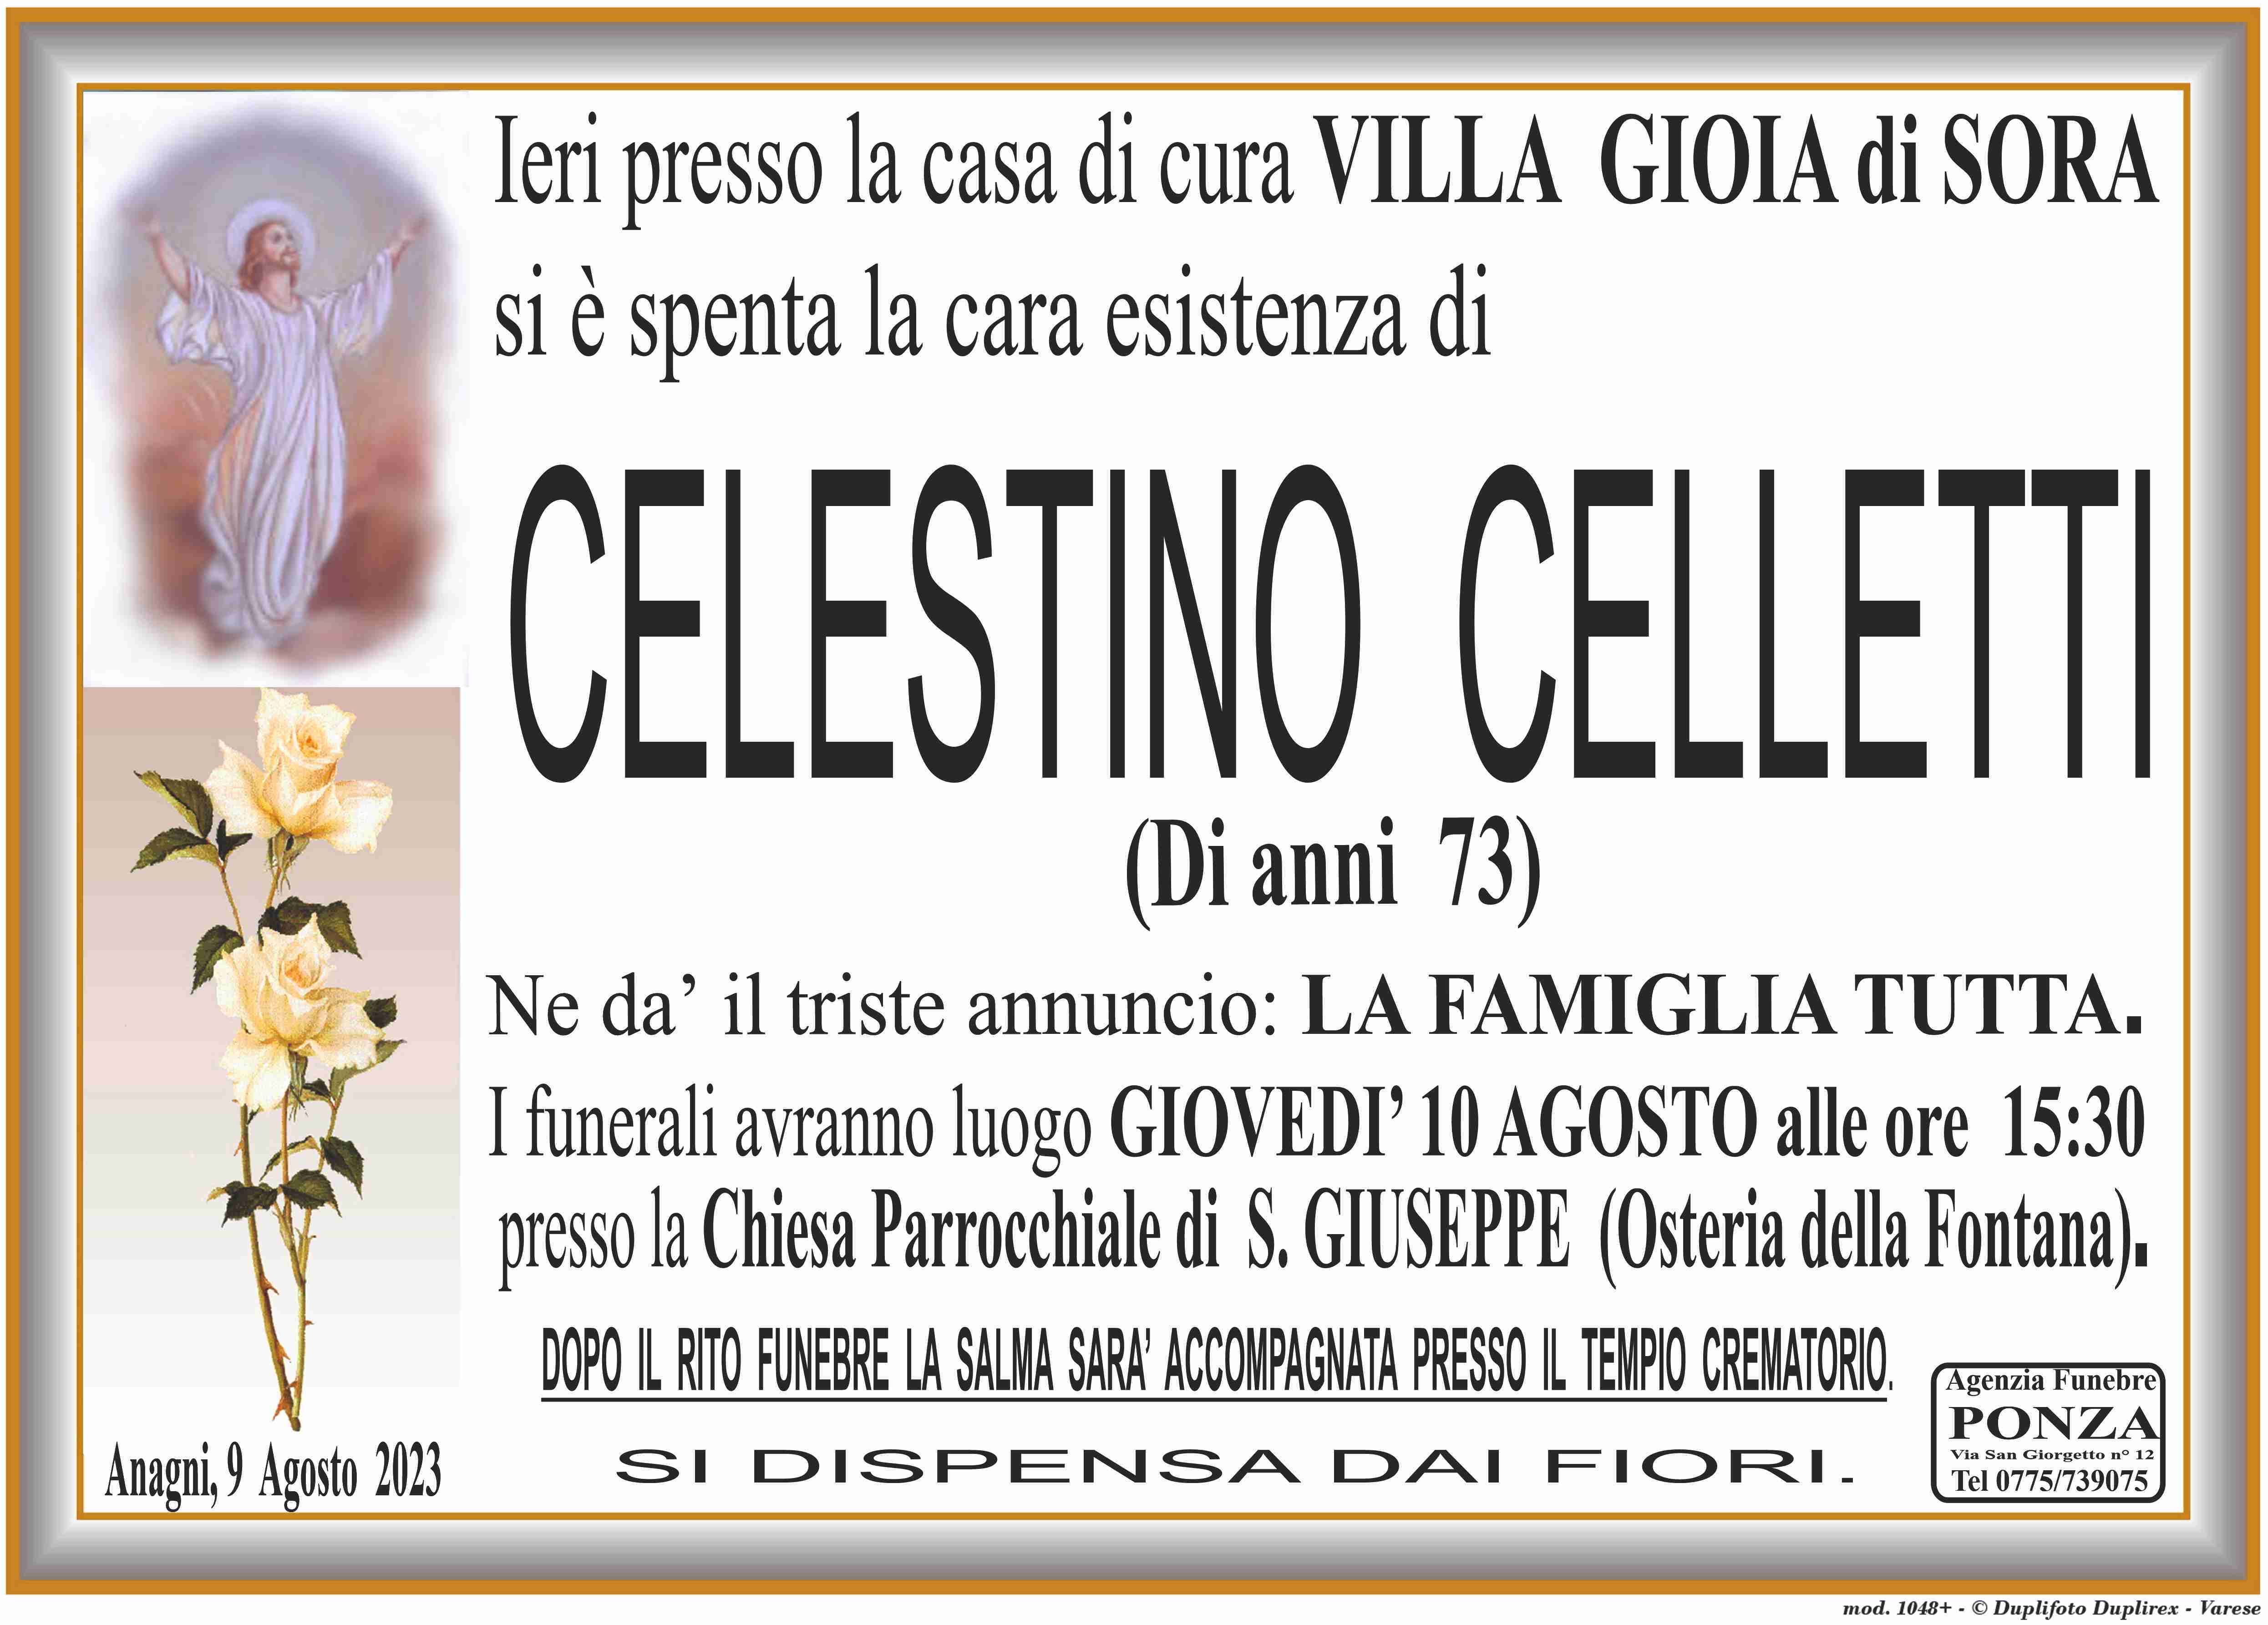 Celestino Celletti